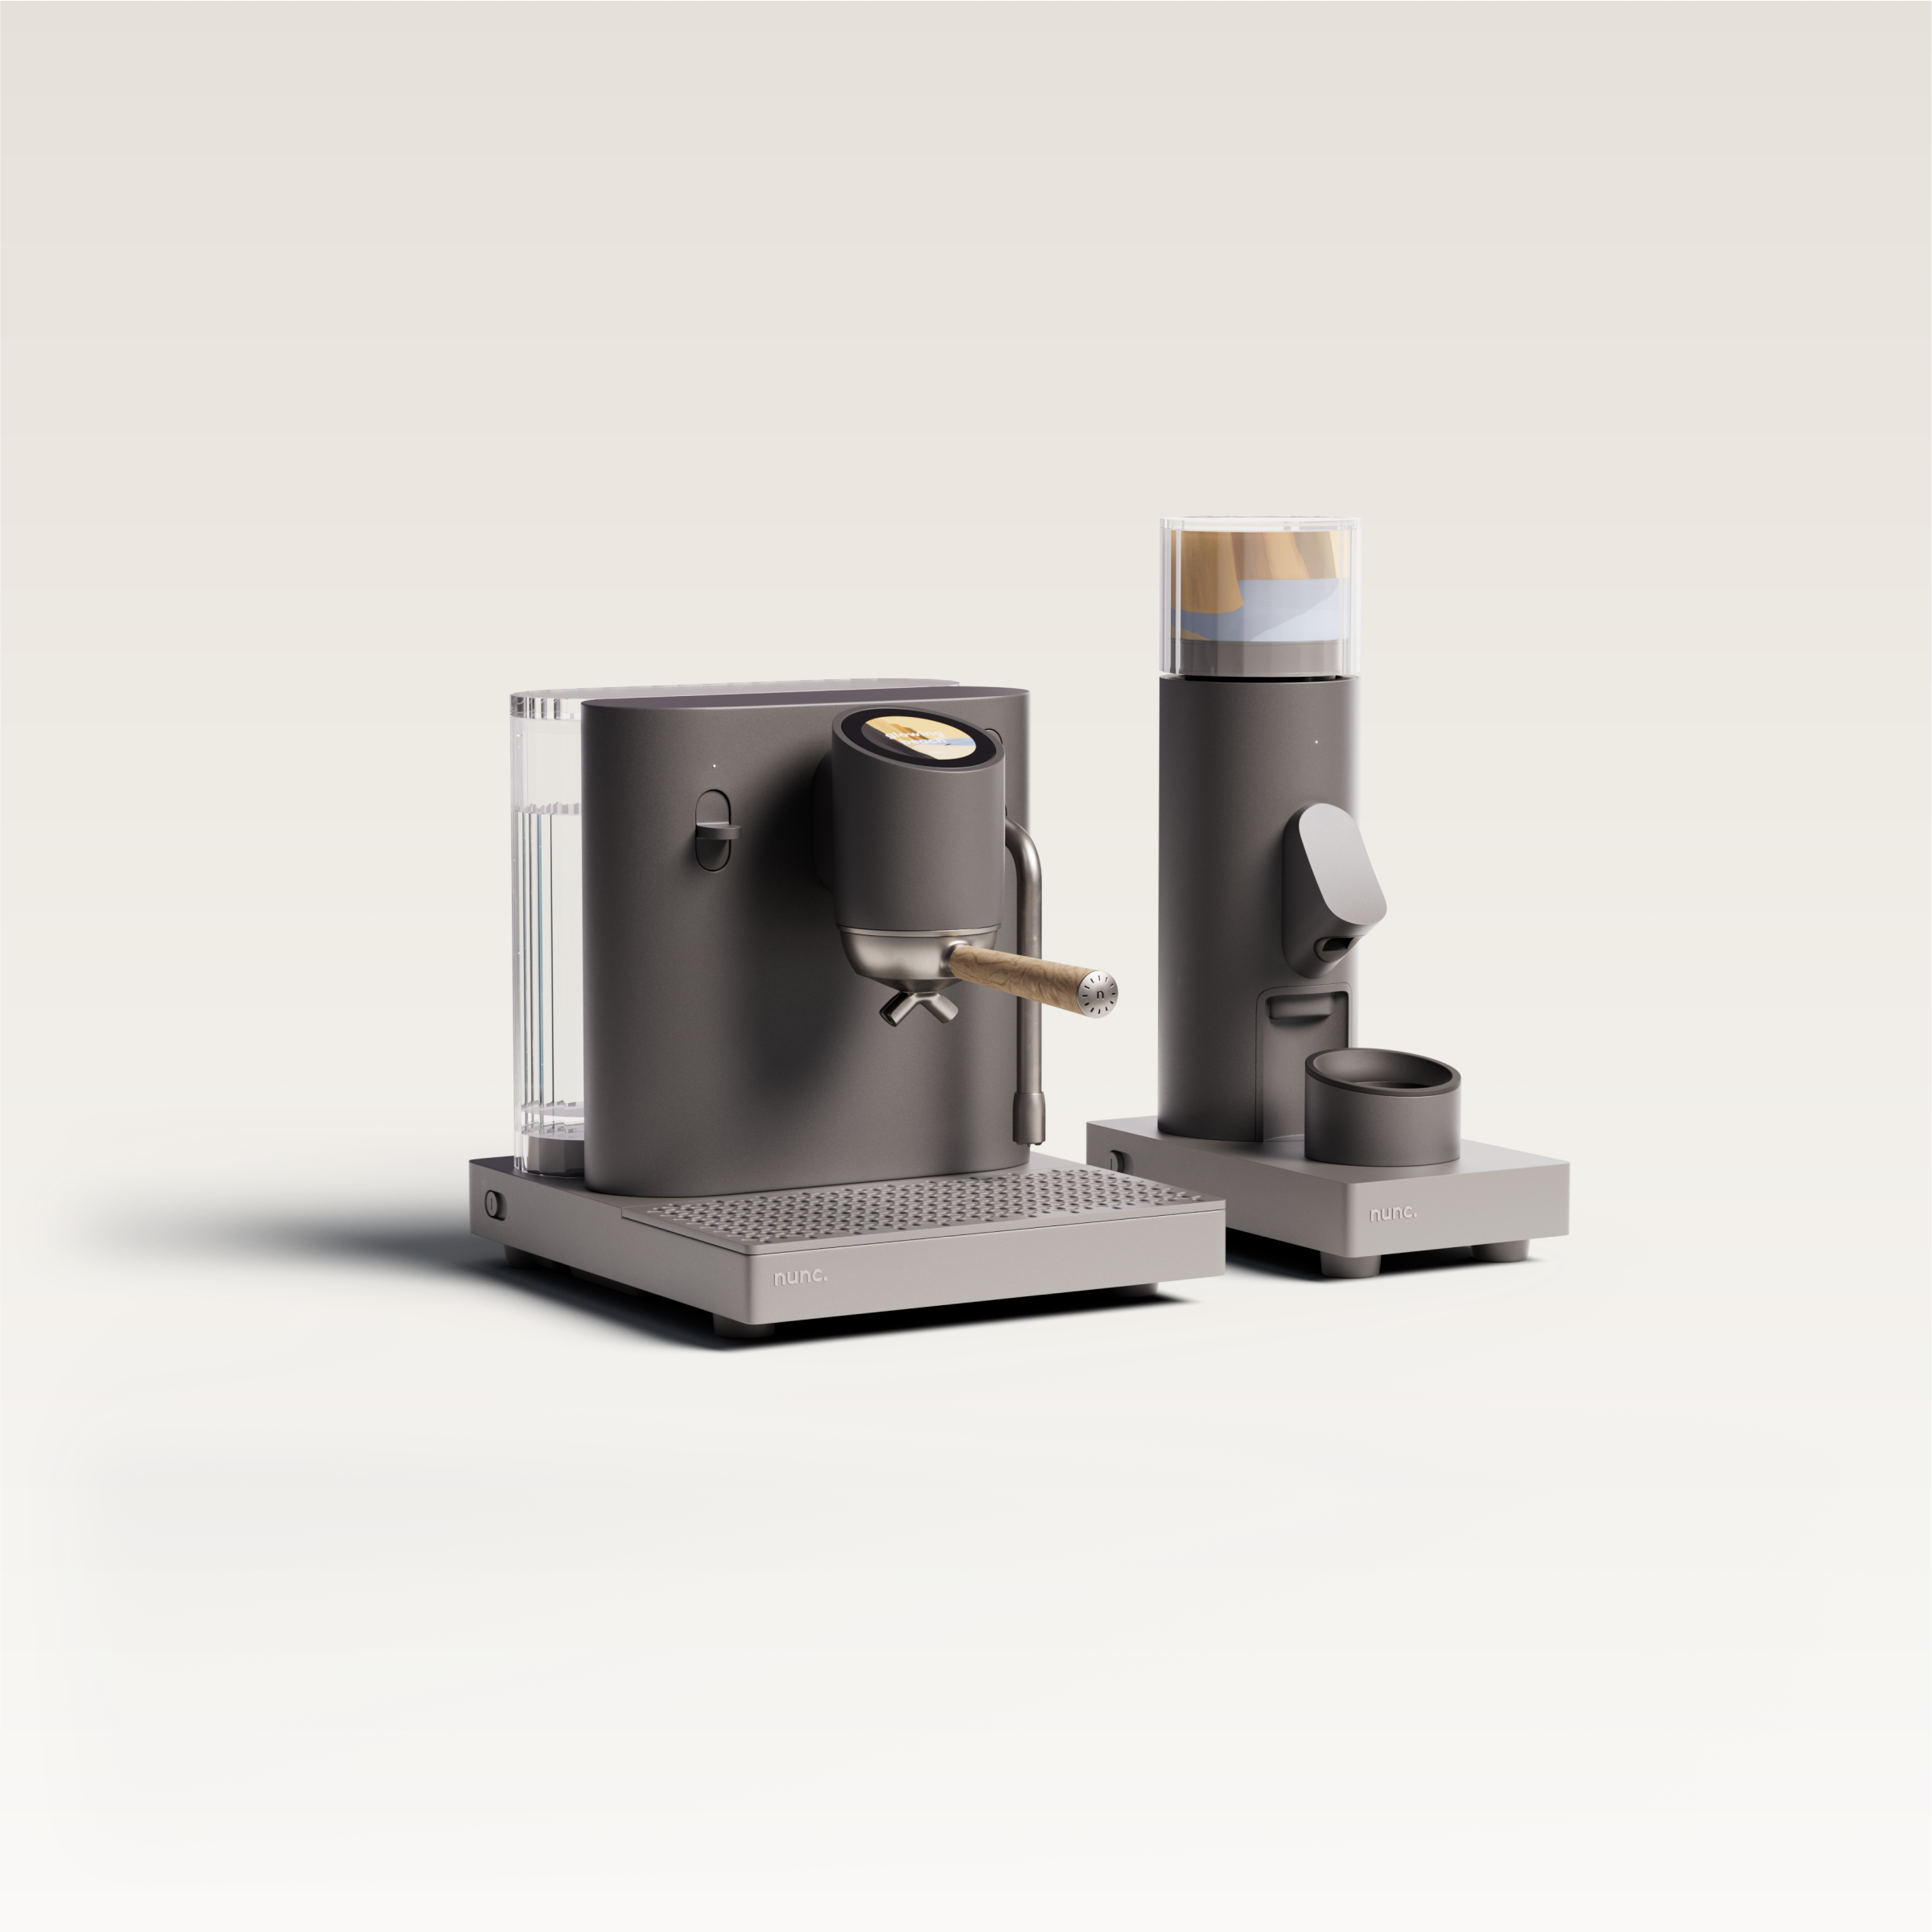 nunc. Espressomaschine mit Espressomühle – nunc. – Qualität und Innovation vereint in einer Maschine